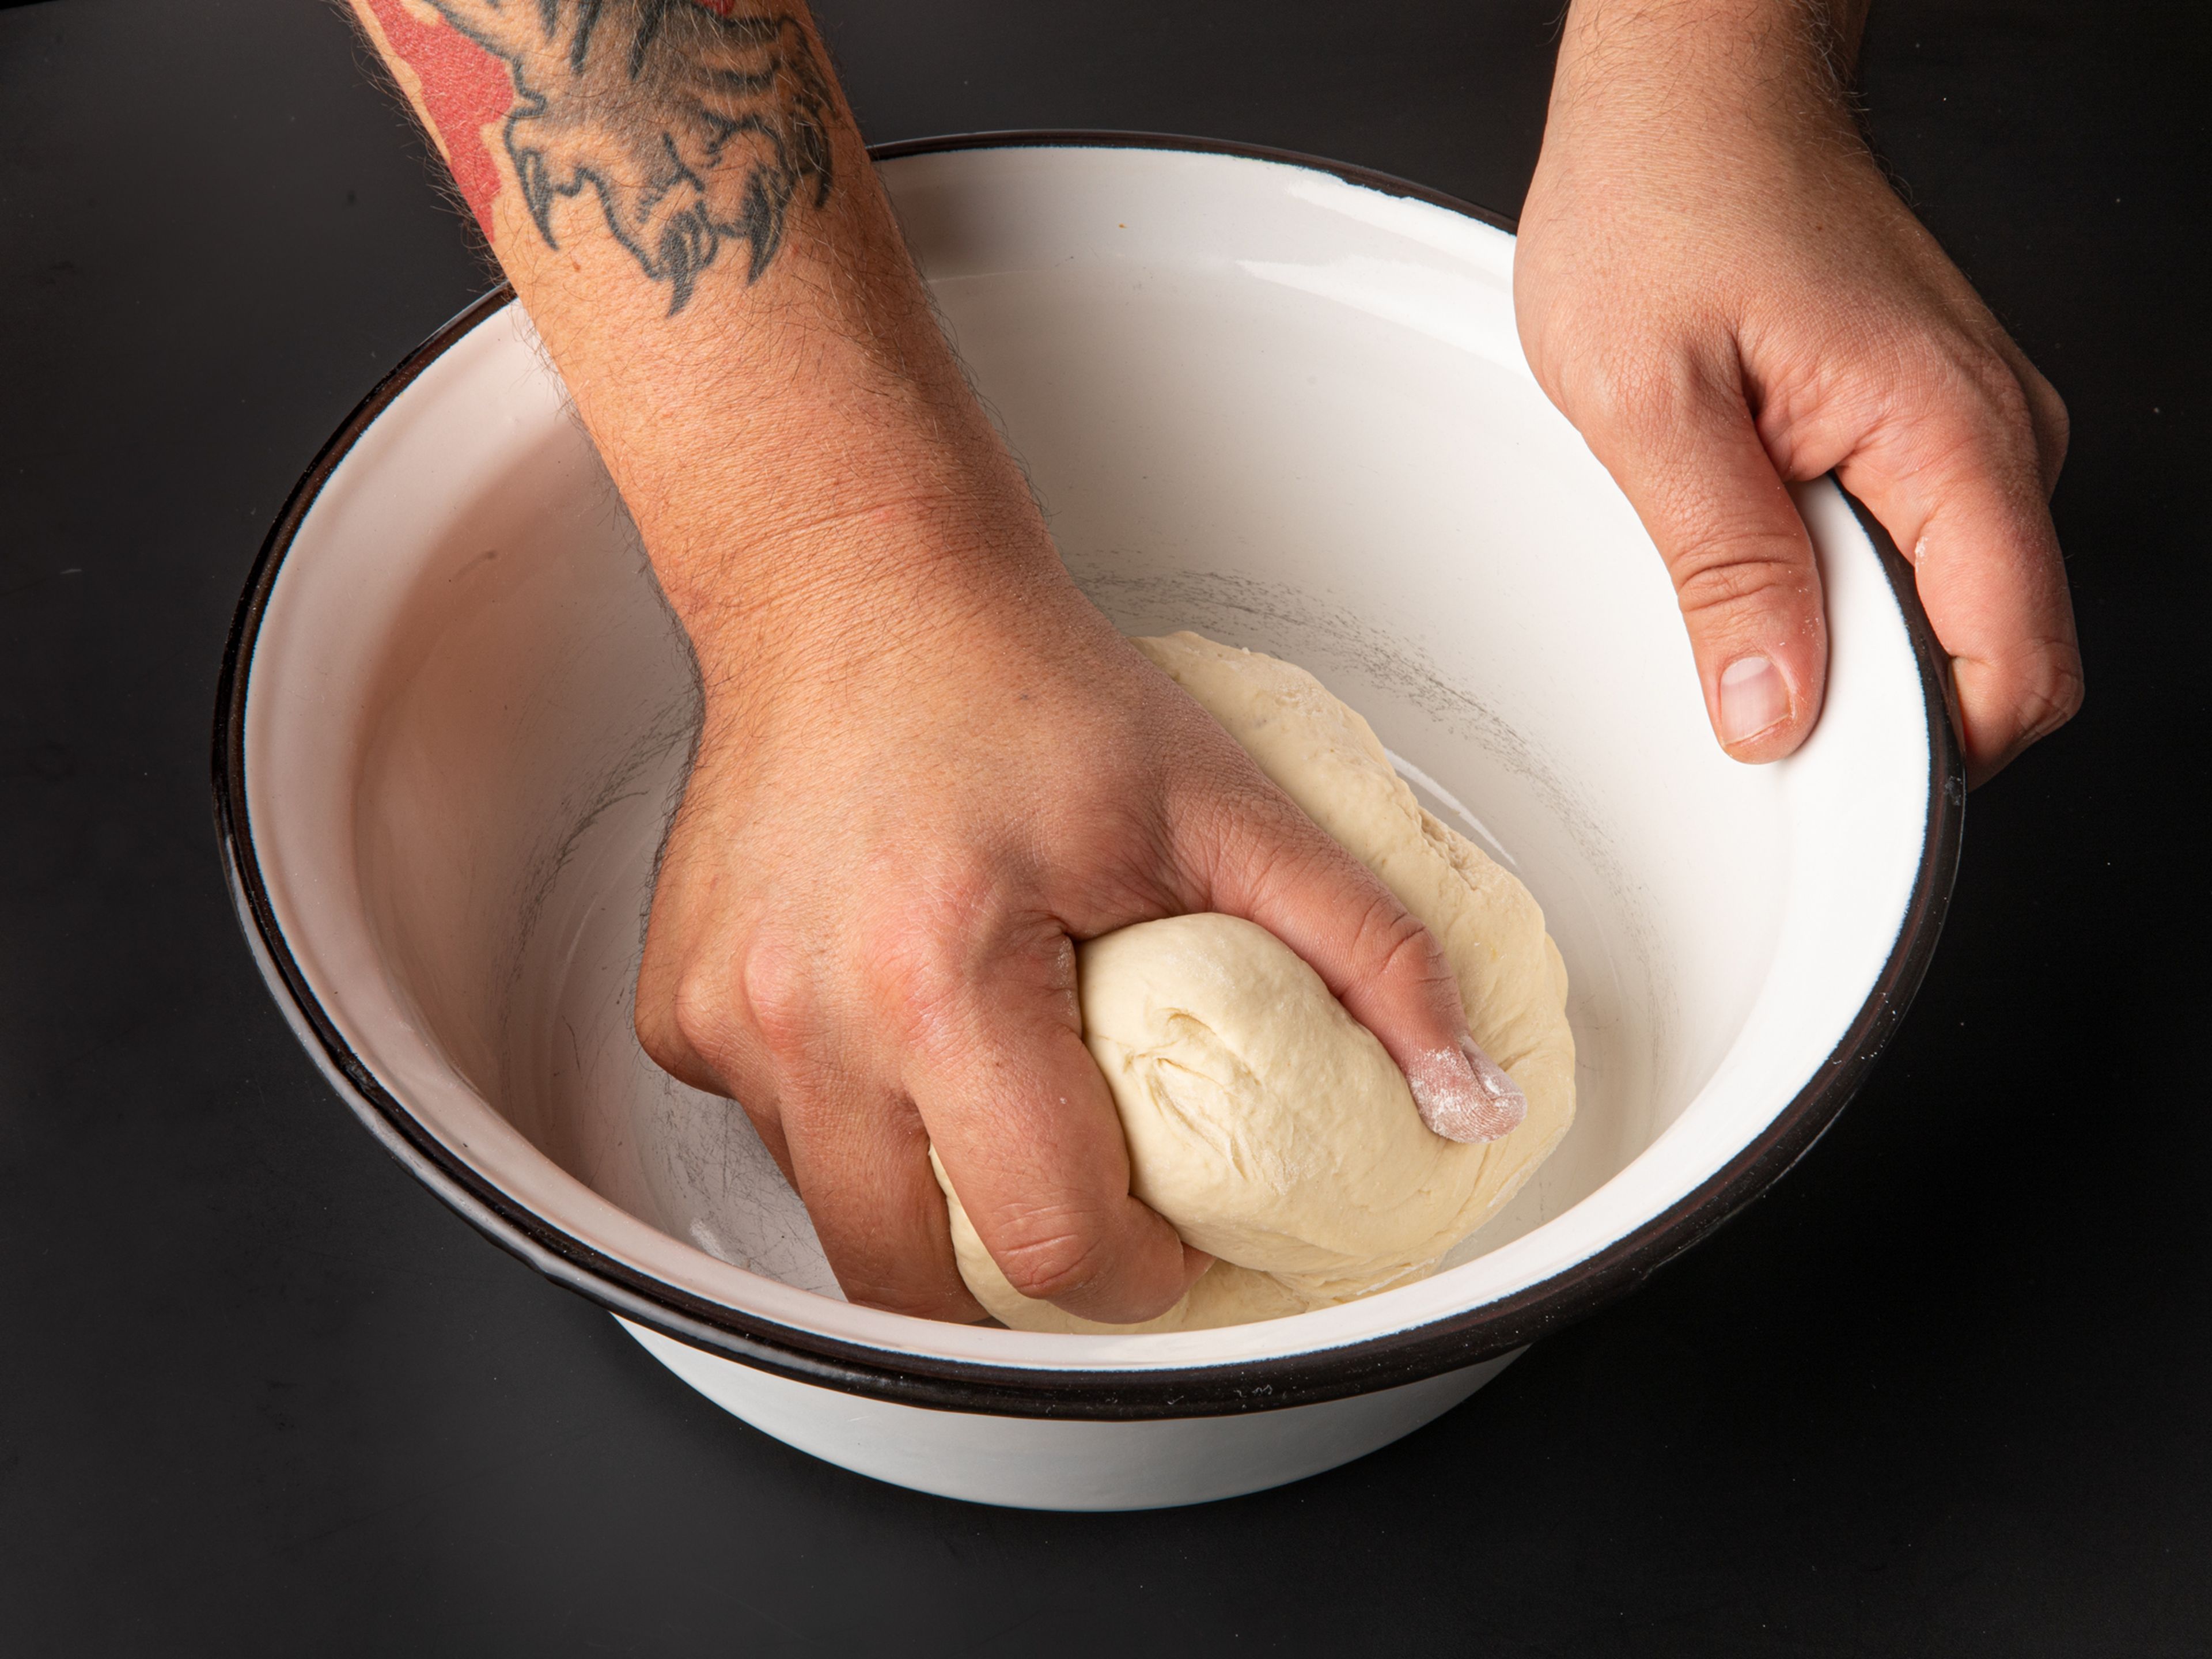 Kartoffeln schälen und halbieren. In einen großen Topf geben und vollständig mit Wasser bedecken. Das Wasser salzen und zum Kochen bringen. Die Hitze dann auf mittlere Stufe reduzieren und die Kartoffeln ca. 20 Min. kochen, bis sie weich sind. Danach abgießen und abkühlen lassen. In der Zwischenzeit den Teig zubereiten. Dazu Mehl, Ei, Wasser und Salz in einer großen Rührschüssel vermischen. Den Teig mit den Händen oder einer Küchenmaschine so lange kneten, bis ein elastischer Teig entsteht. Den Teig zu einer Kugel formen, mit Frischhaltefolie abdecken und ca. 30 Min. ruhen lassen.